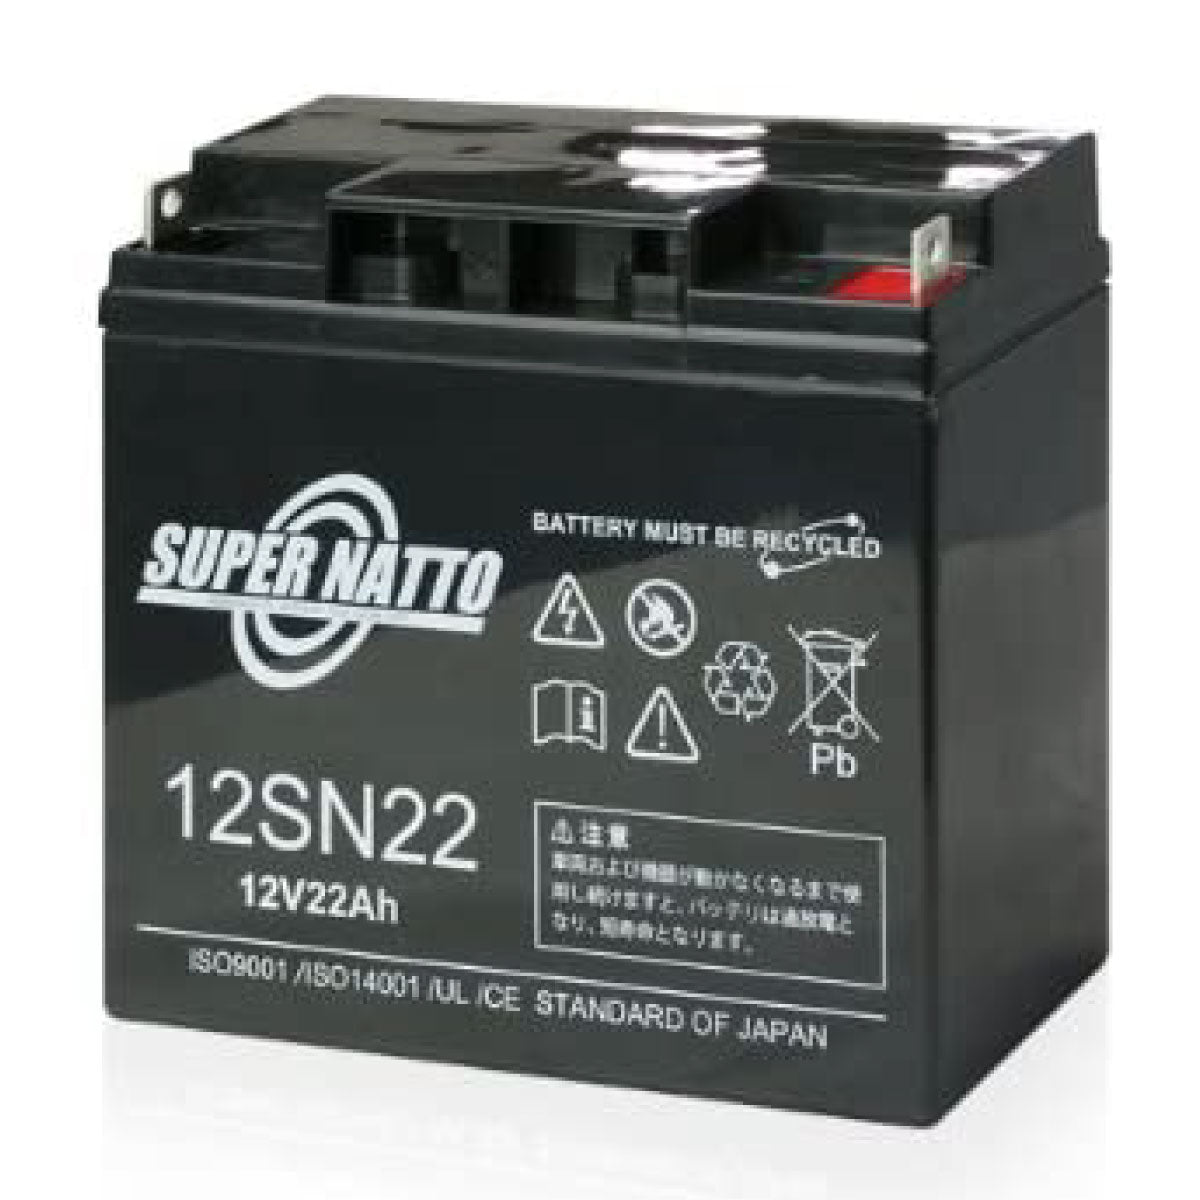 スーパーナット 12SN22 サイクルバッテリー